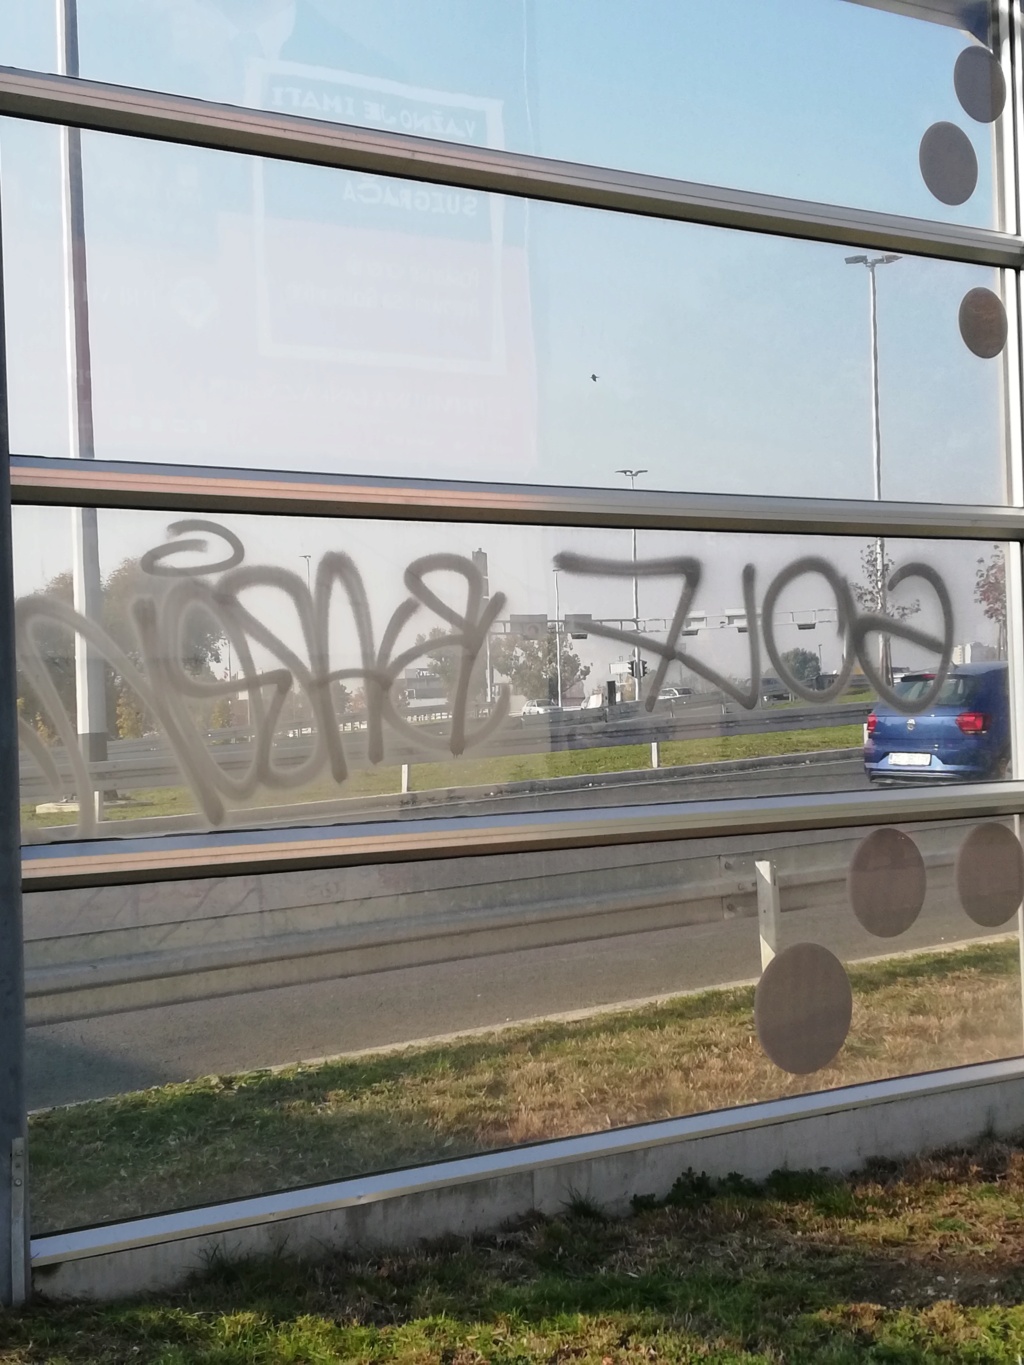 Senfov stranacki kolega naredio da se ukloni mural posvecen braniteljima i Vukovaru.Prosvjednici se okupljaju.Cekaju HEP-ovu dozvolu. Img_1010